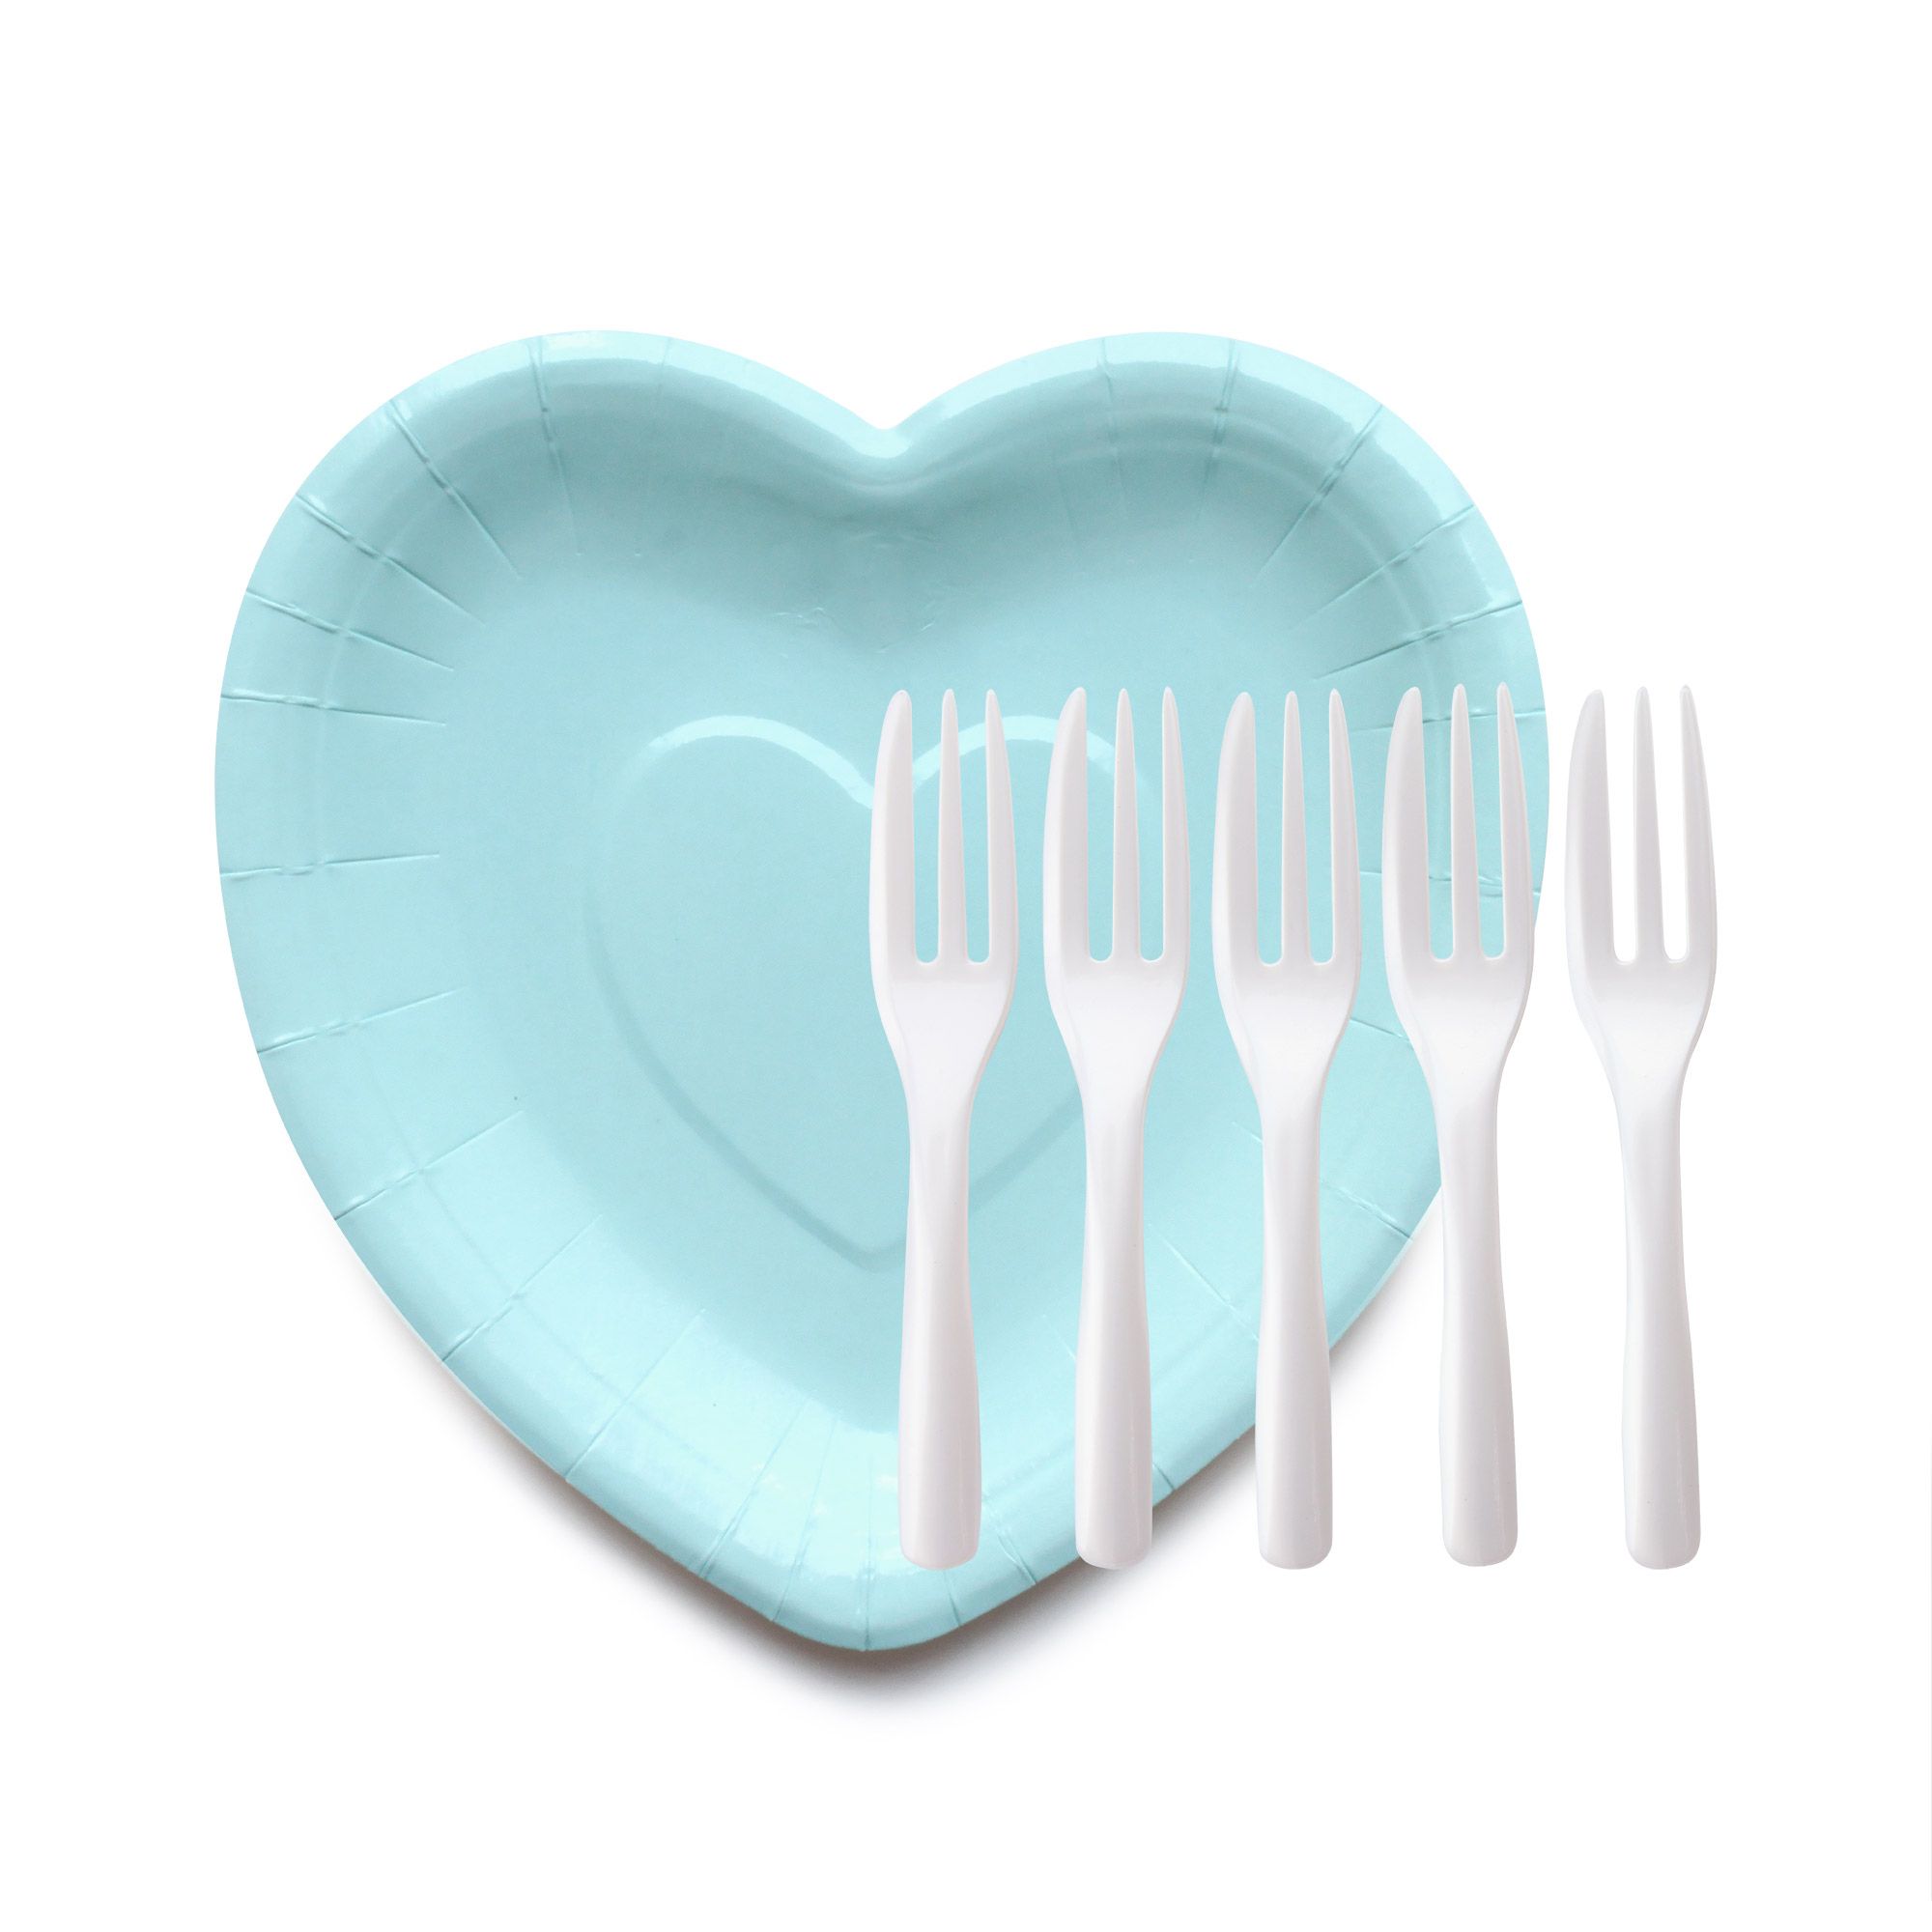 Piatti per torte di carta a forma di cuore BabyBlue con forchette